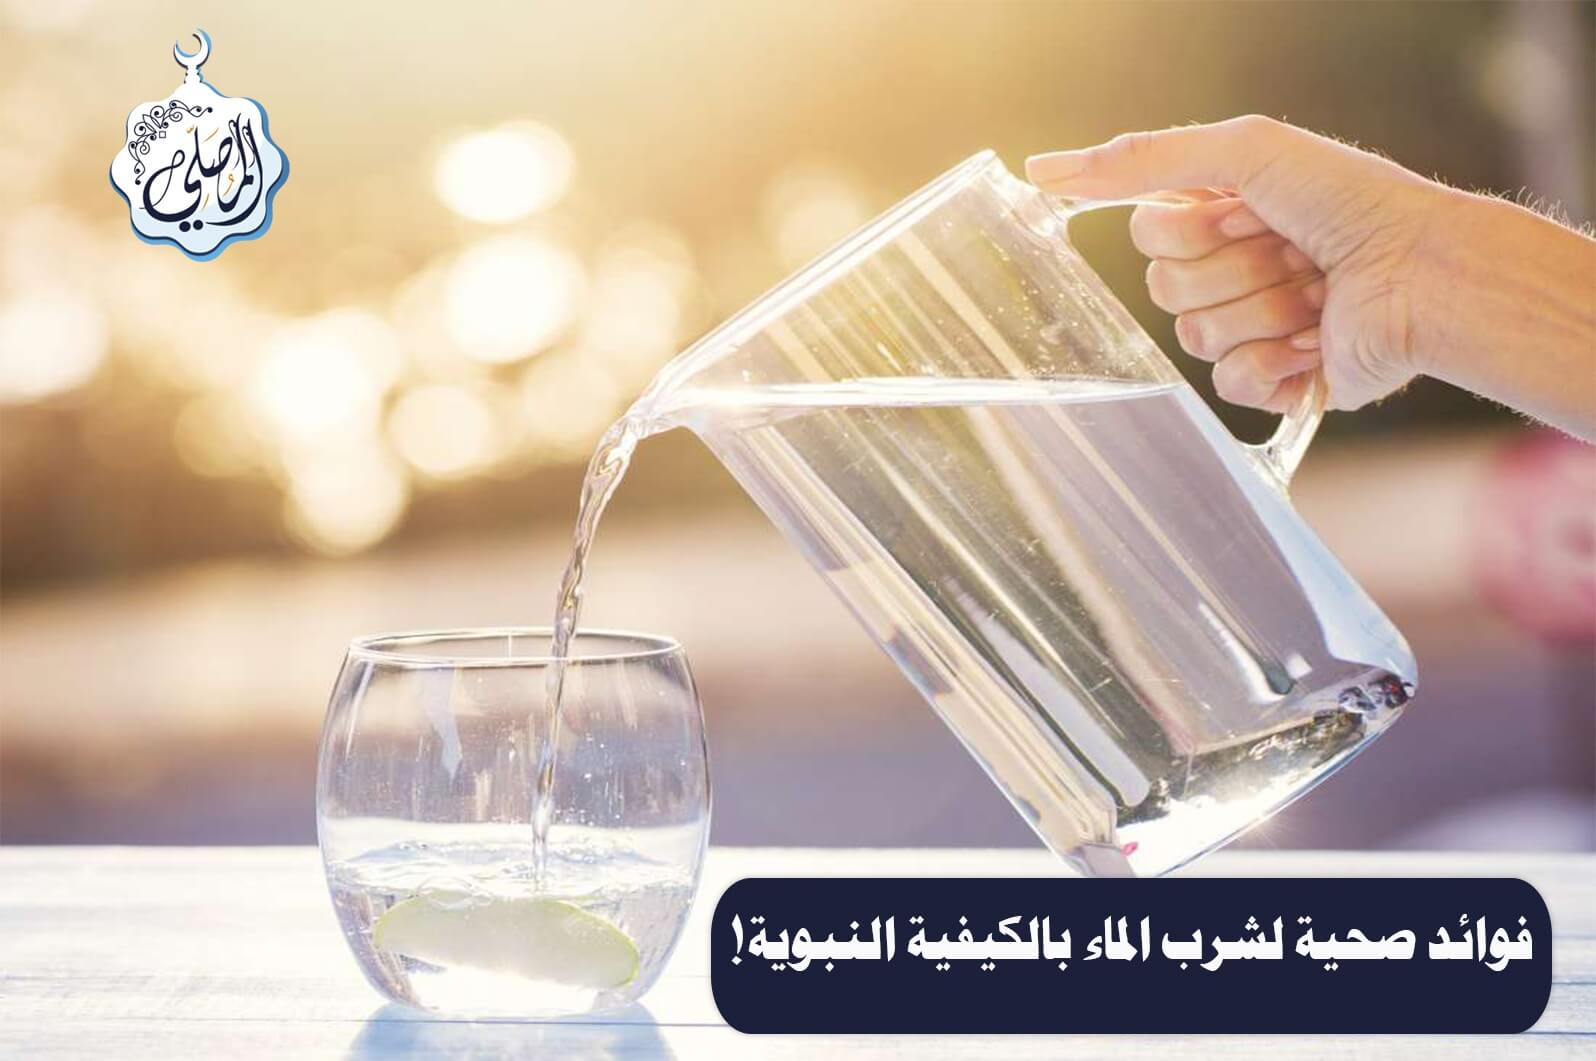 فوائد صحية لشرب الماء بالكيفية التي كان يشرب بها النبي صلى الله عليه وسلم!